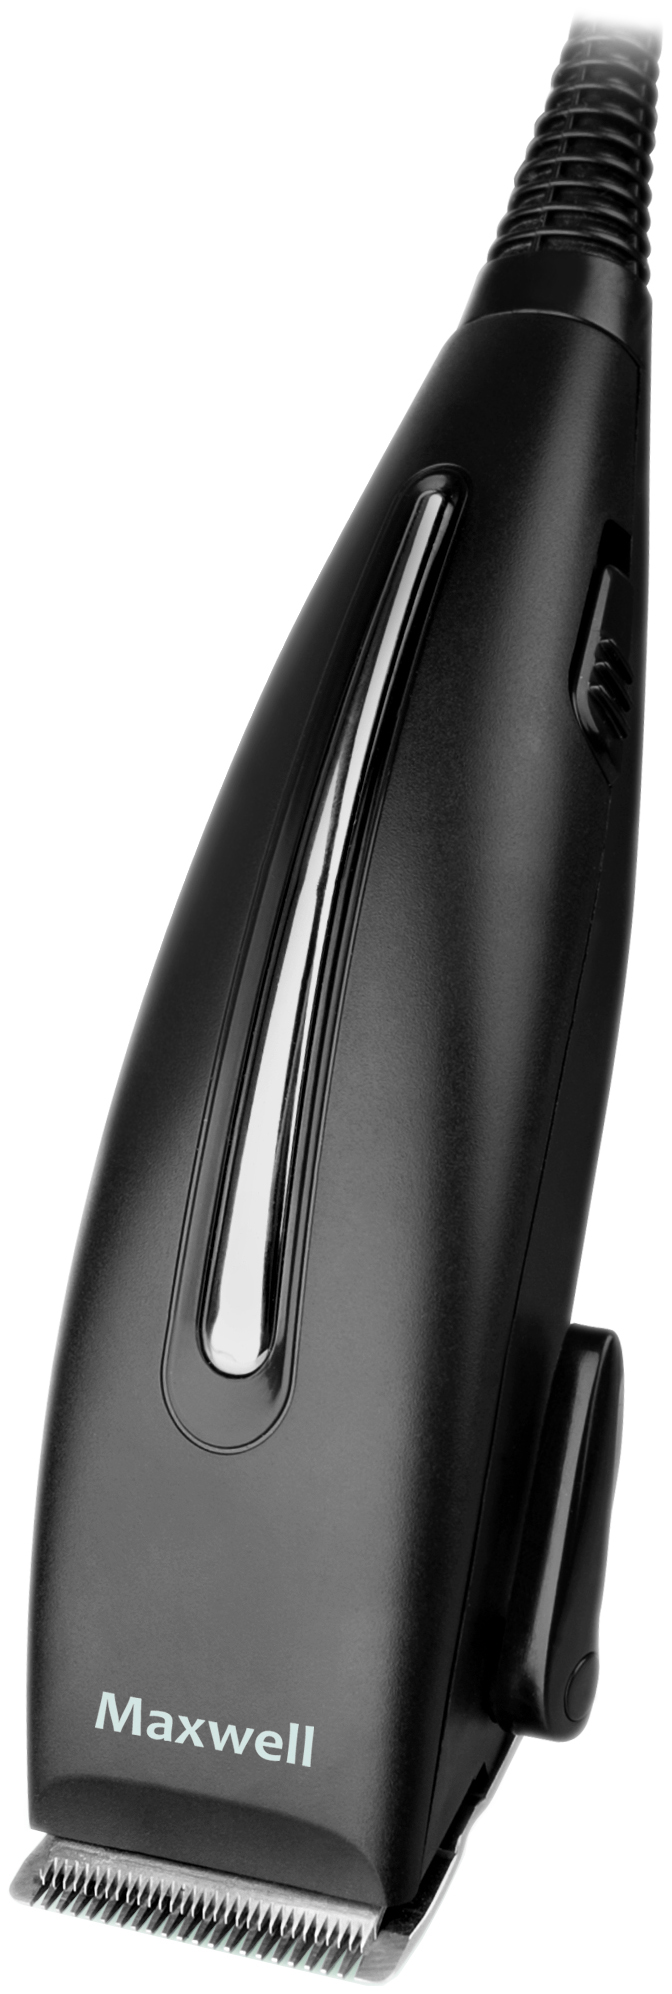 Машинка для стрижки волос Maxwell MW-2112 стрижка шея кейп уплотнение воротник щит водонепроницаемая силиконовая окраска волос куттинг парикмахерская парикмахерская